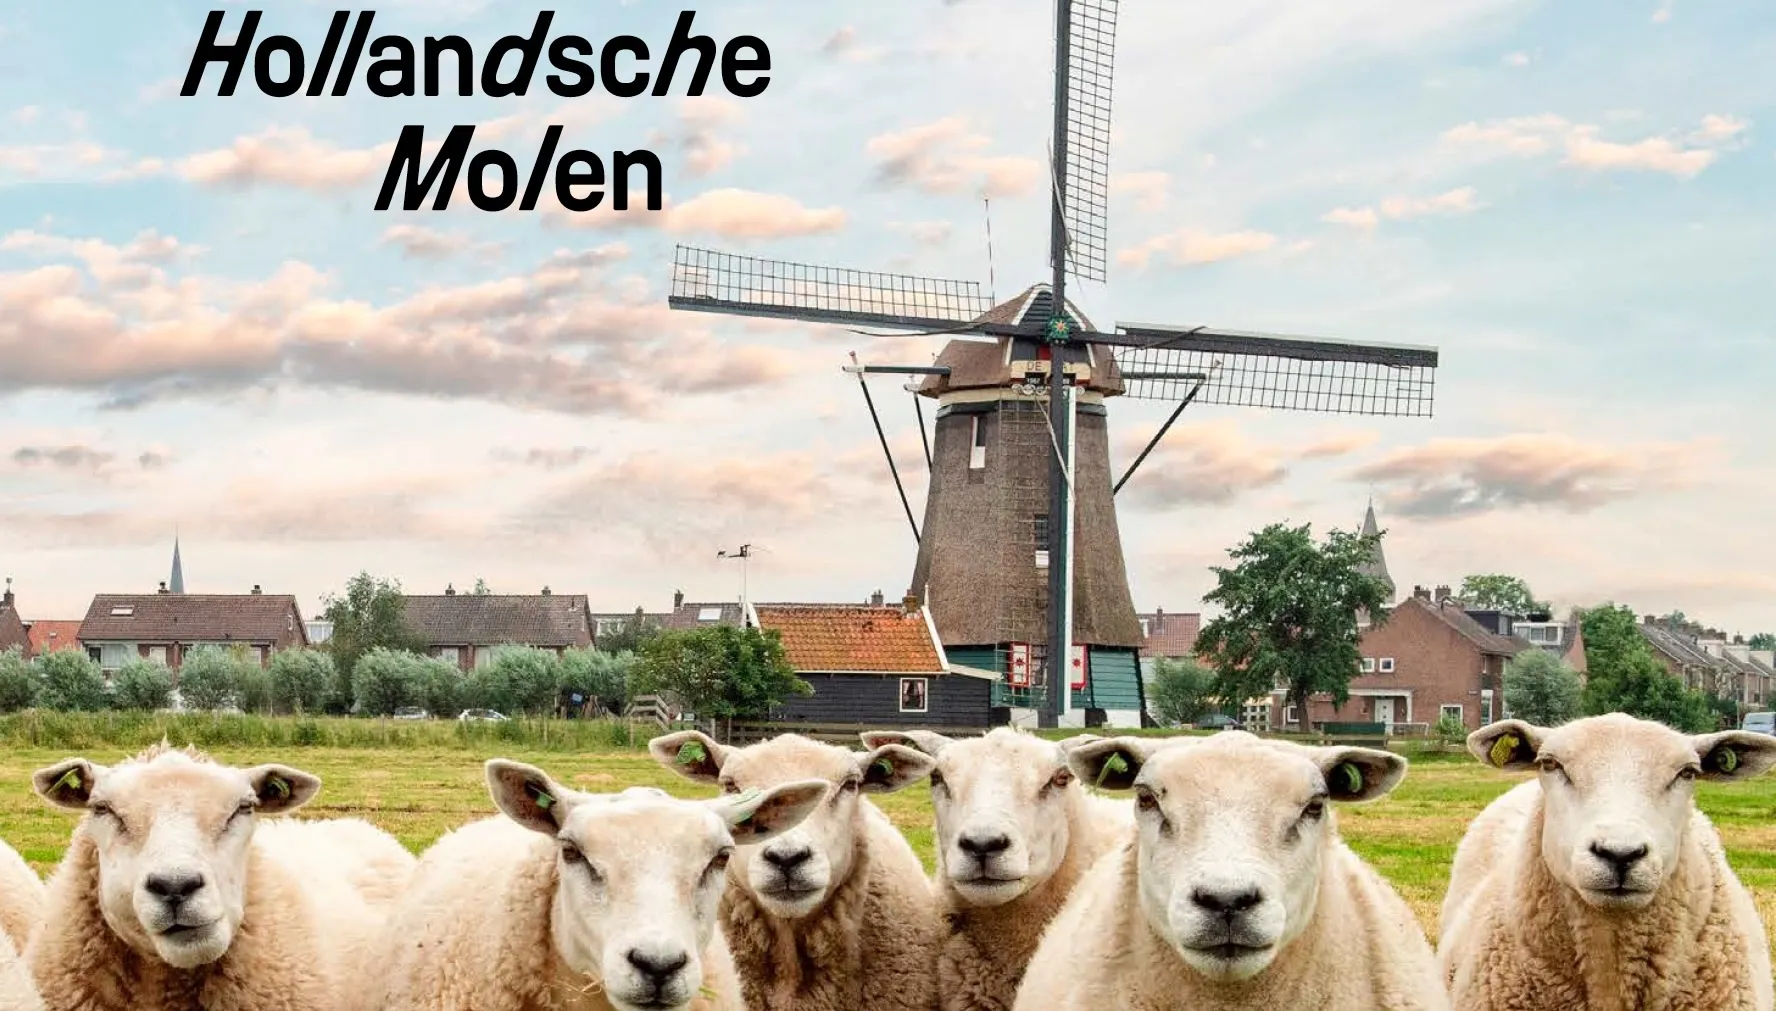  gratis boekje met wandel- en fietsroutes langs molens in Nederland